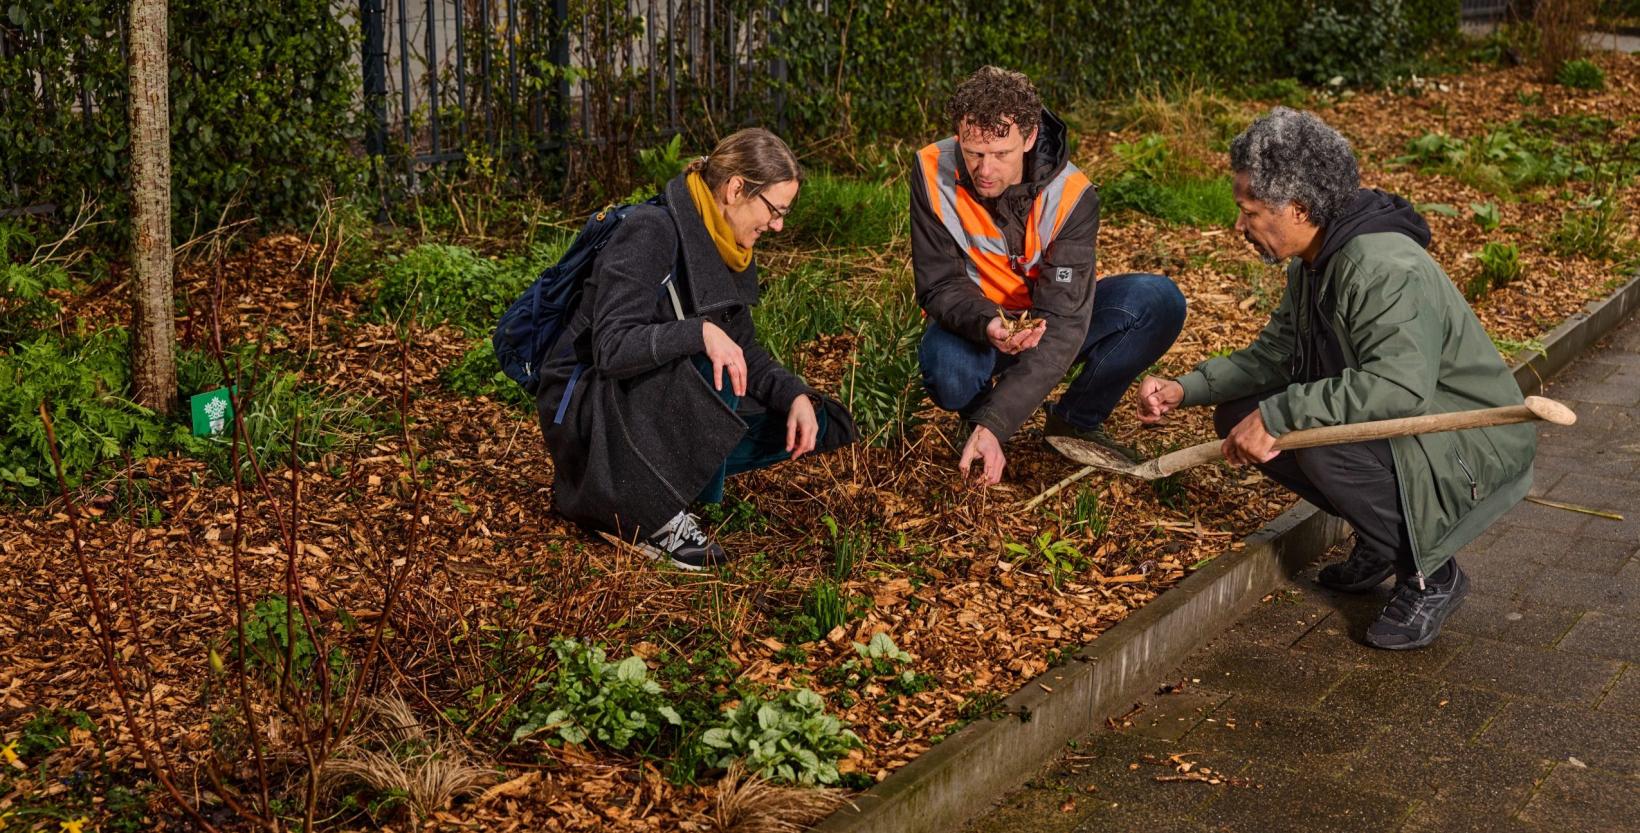 Op de foto drie mensen gehurkt in een perk met planten. De bodem van de perk is bedekt met houtsnippers.